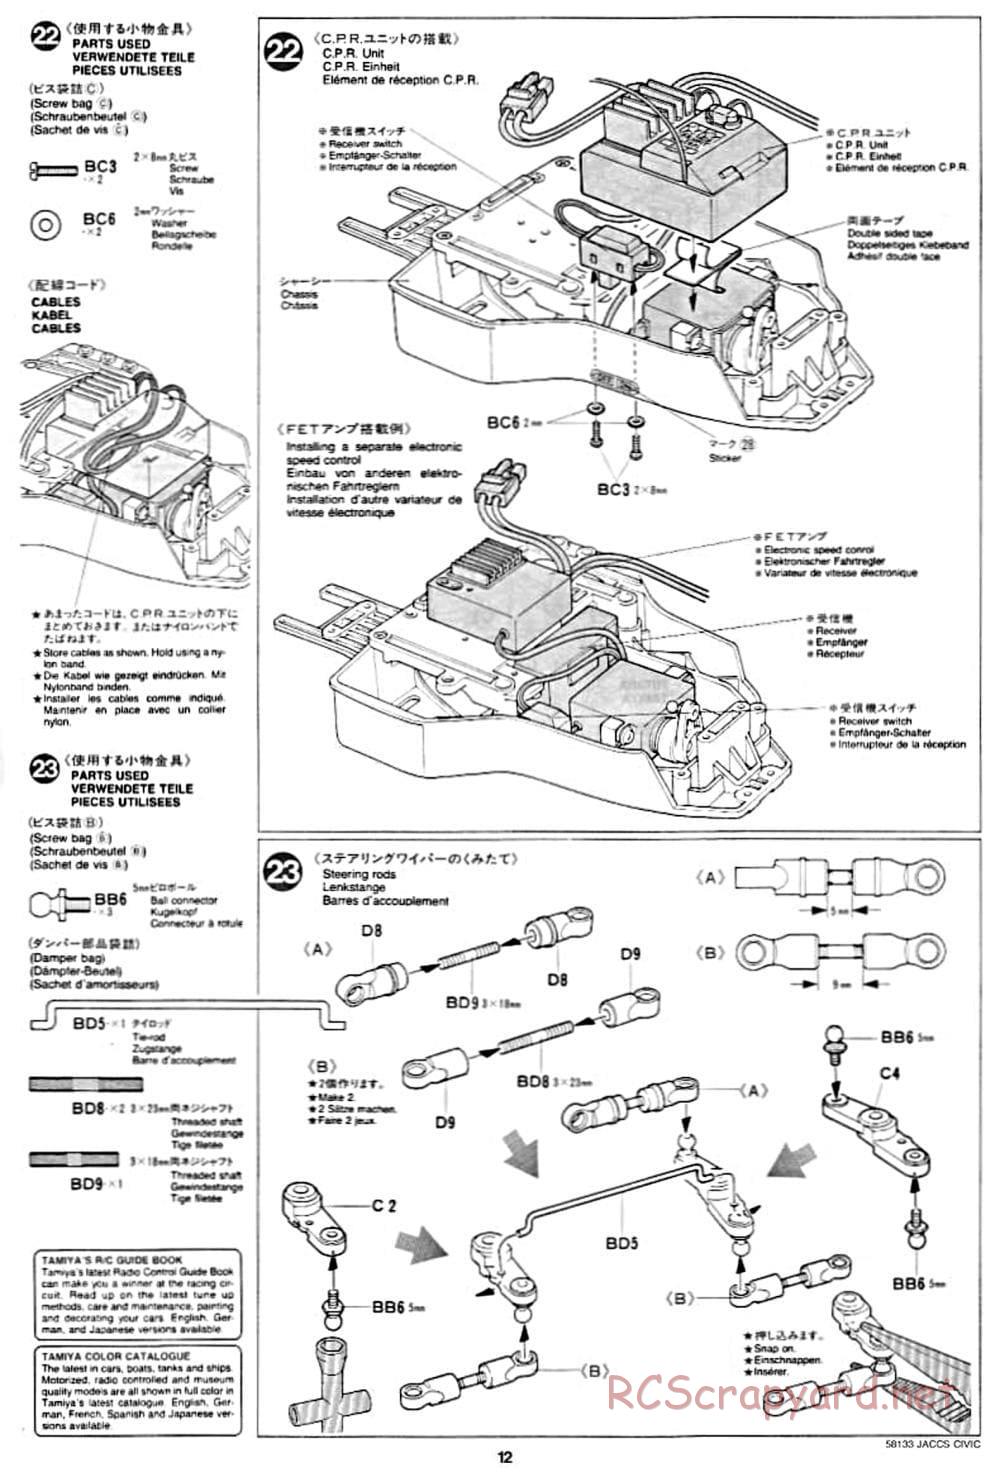 Tamiya - JACCS Honda Civic - FF-01 Chassis - Manual - Page 12